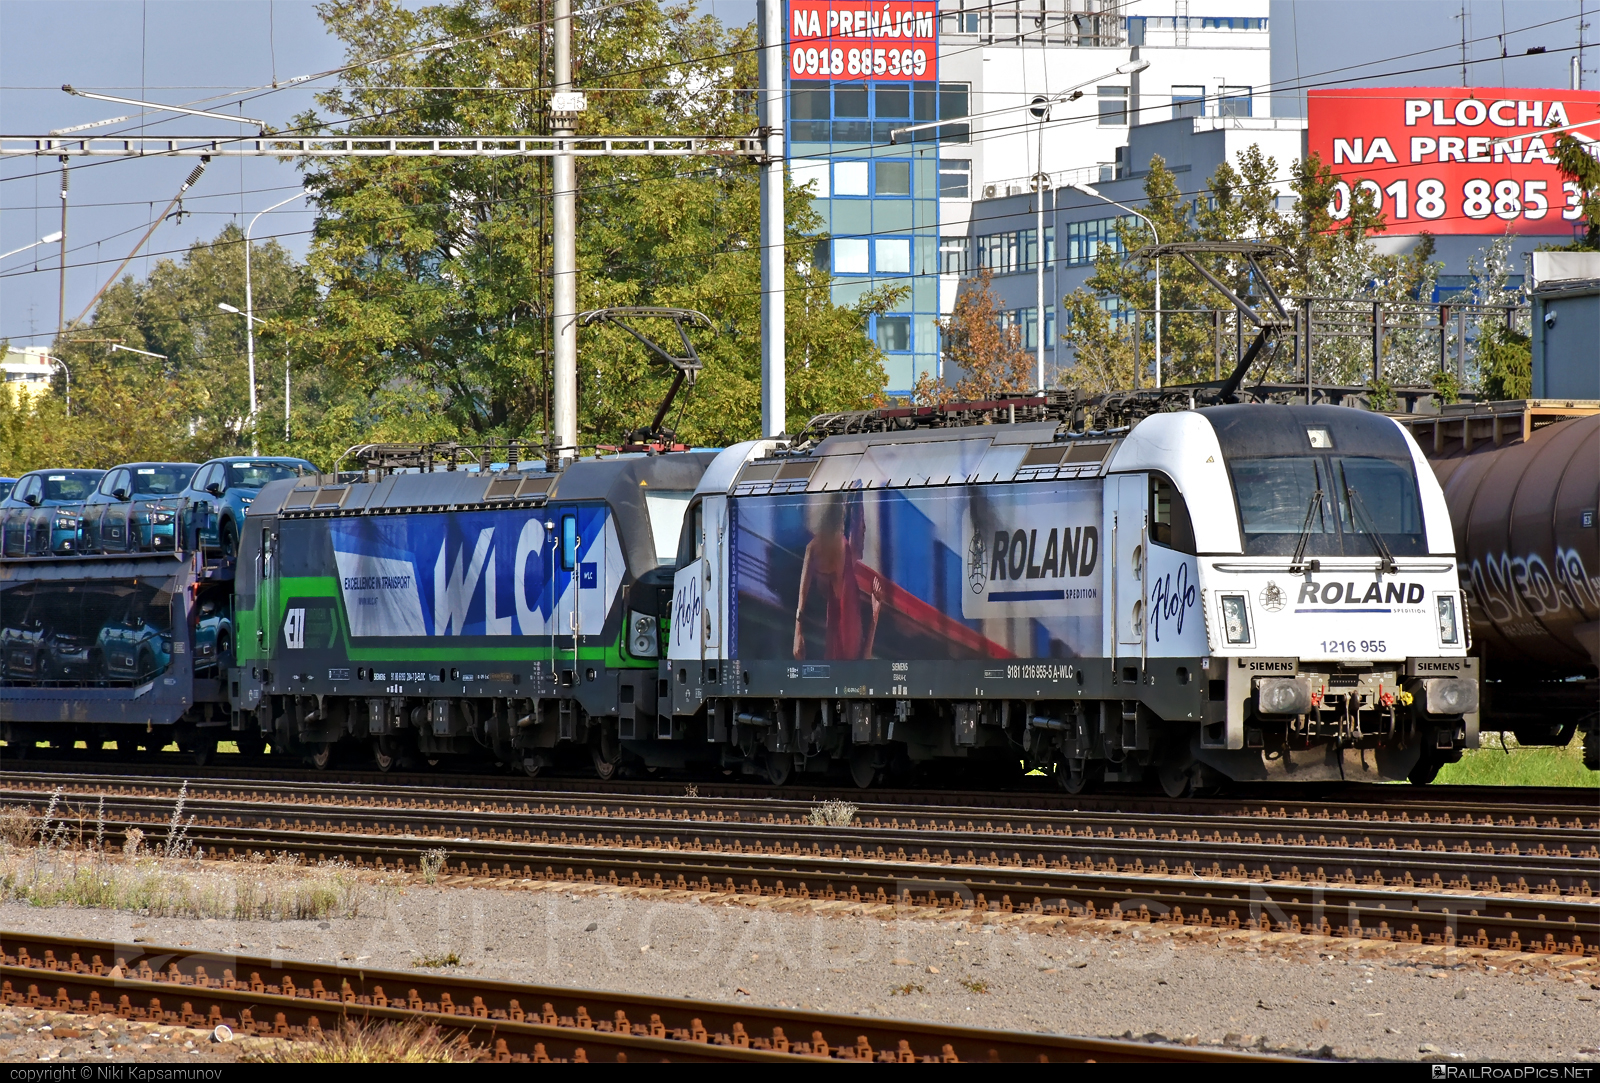 Siemens ES 64 U4 - 1216 955 operated by Wiener Lokalbahnen Cargo GmbH #es64 #es64u4 #eurosprinter #roland #siemens #siemensEs64 #siemensEs64u4 #siemenstaurus #taurus #tauruslocomotive #wienerlokalbahnencargo #wienerlokalbahnencargogmbh #wlc